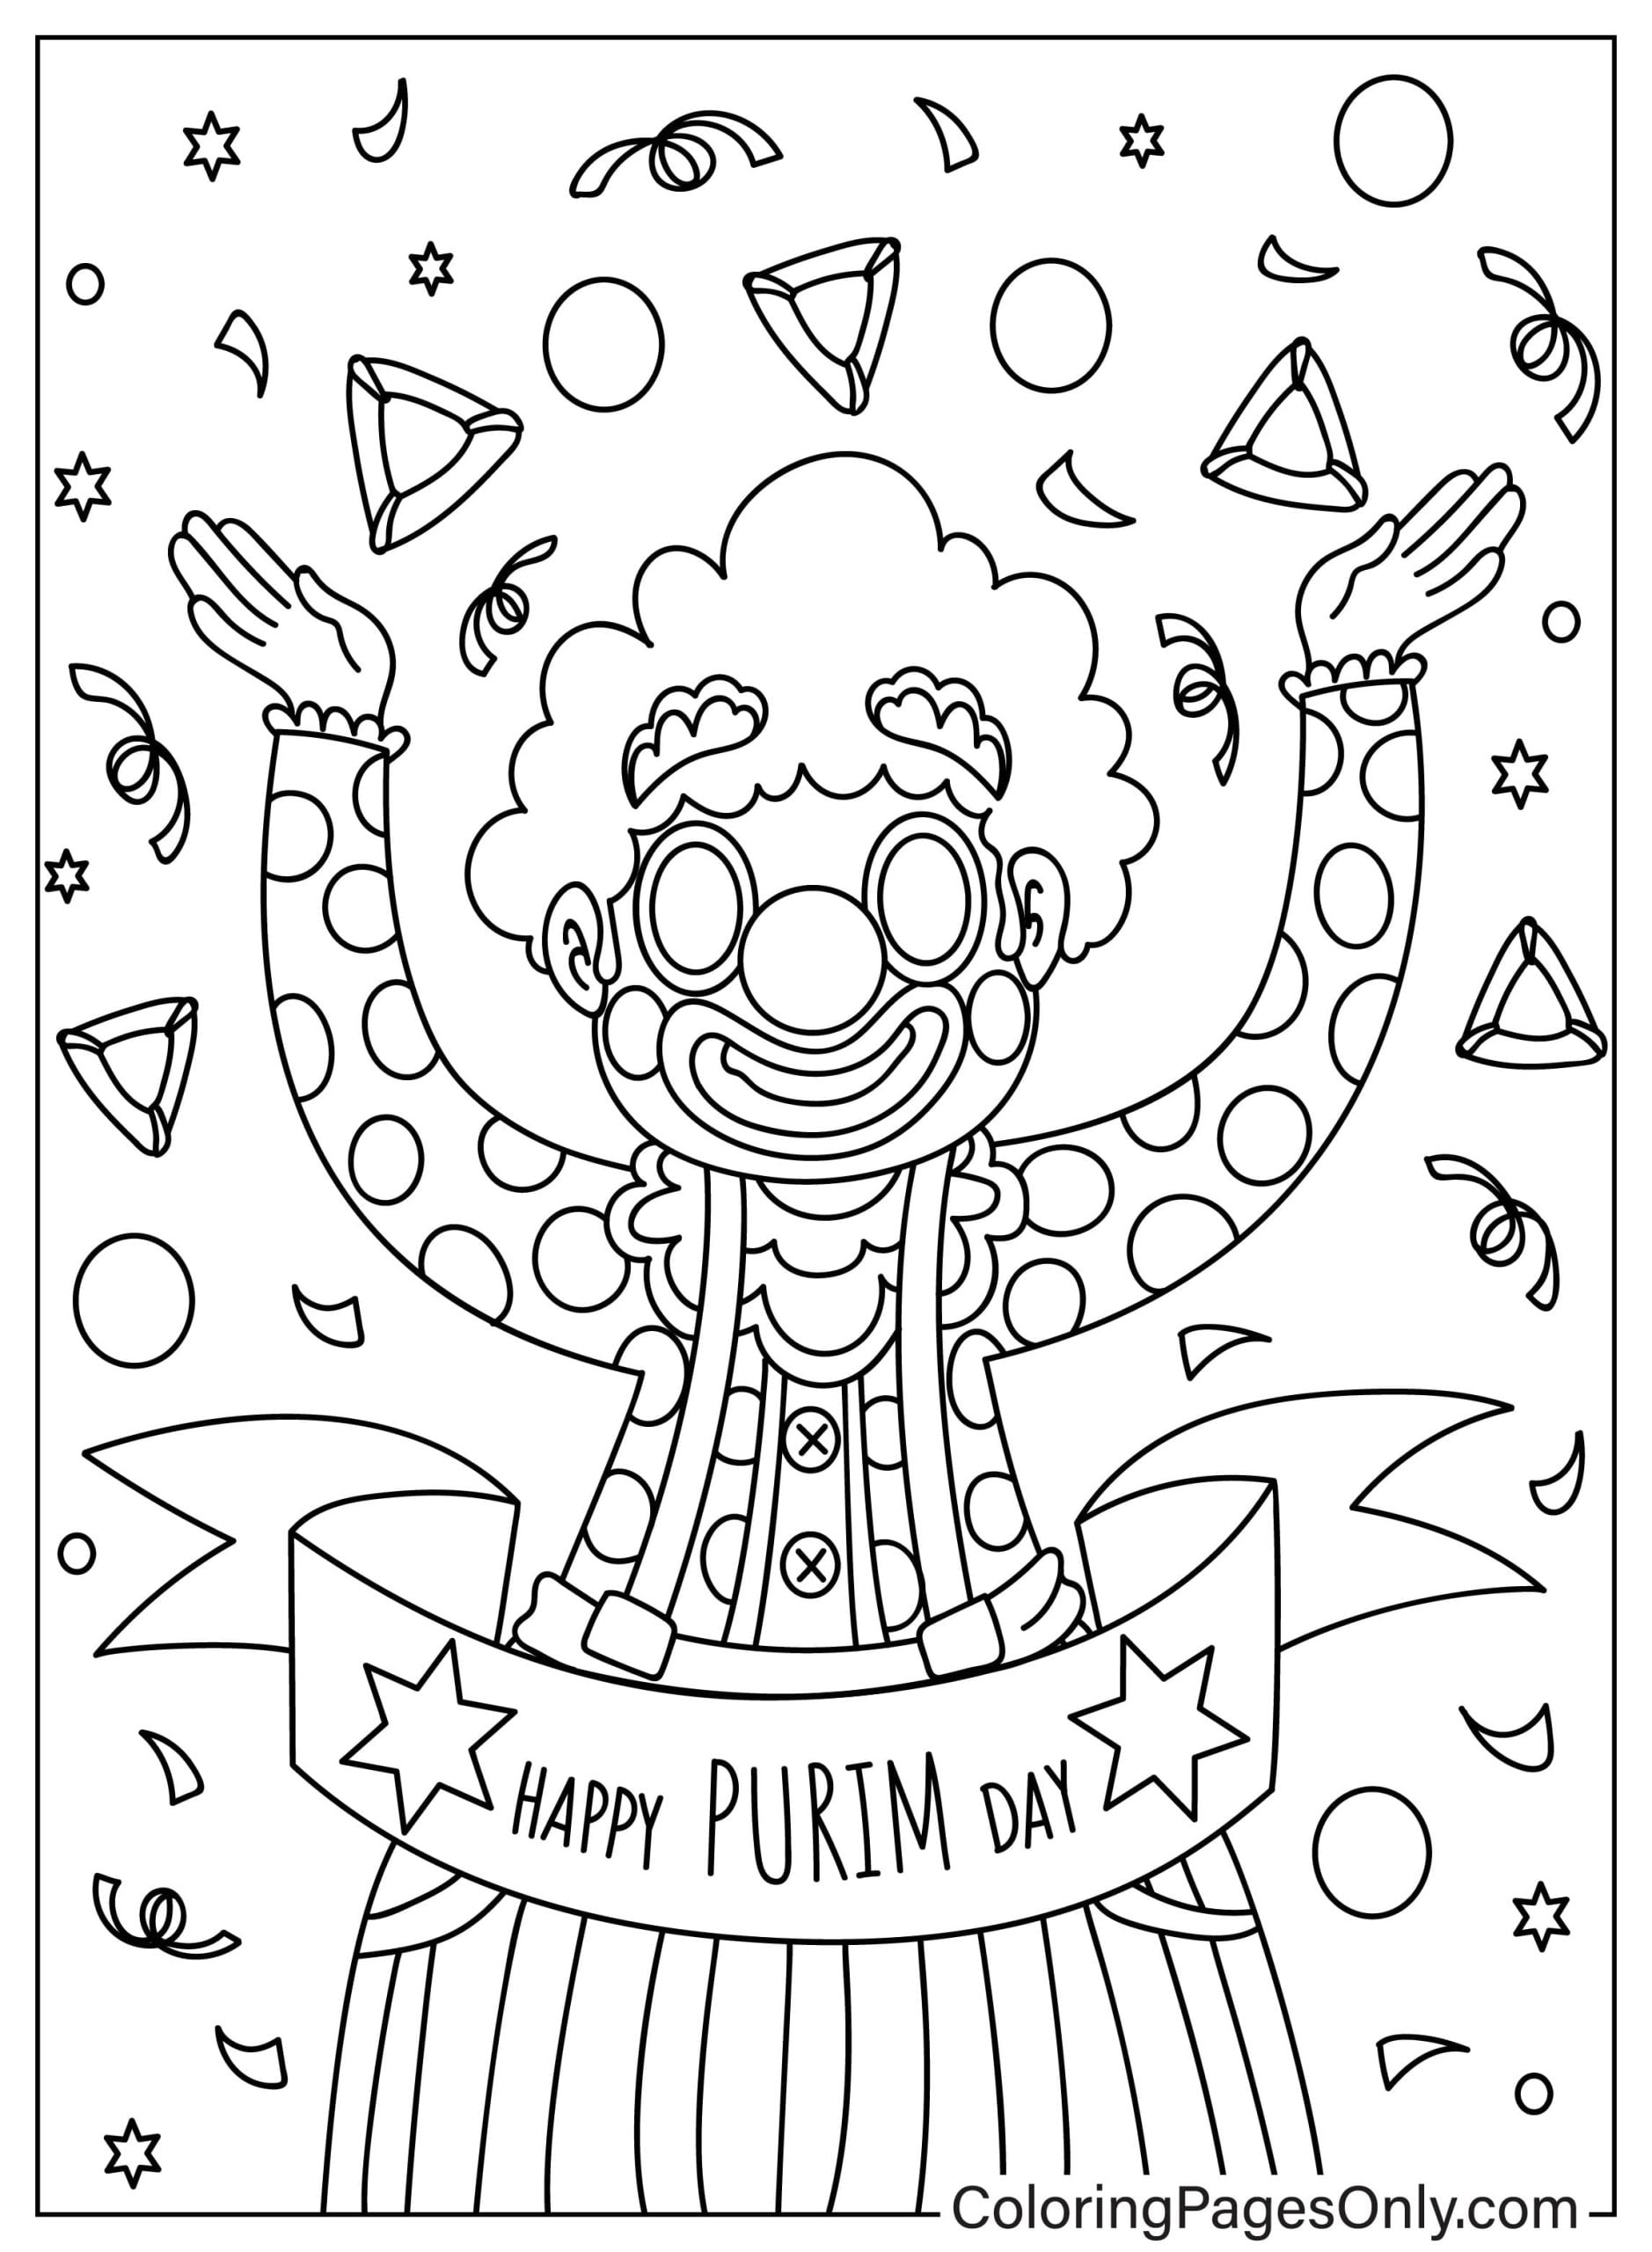 Payaso divertido con Purim Página para colorear de Purim